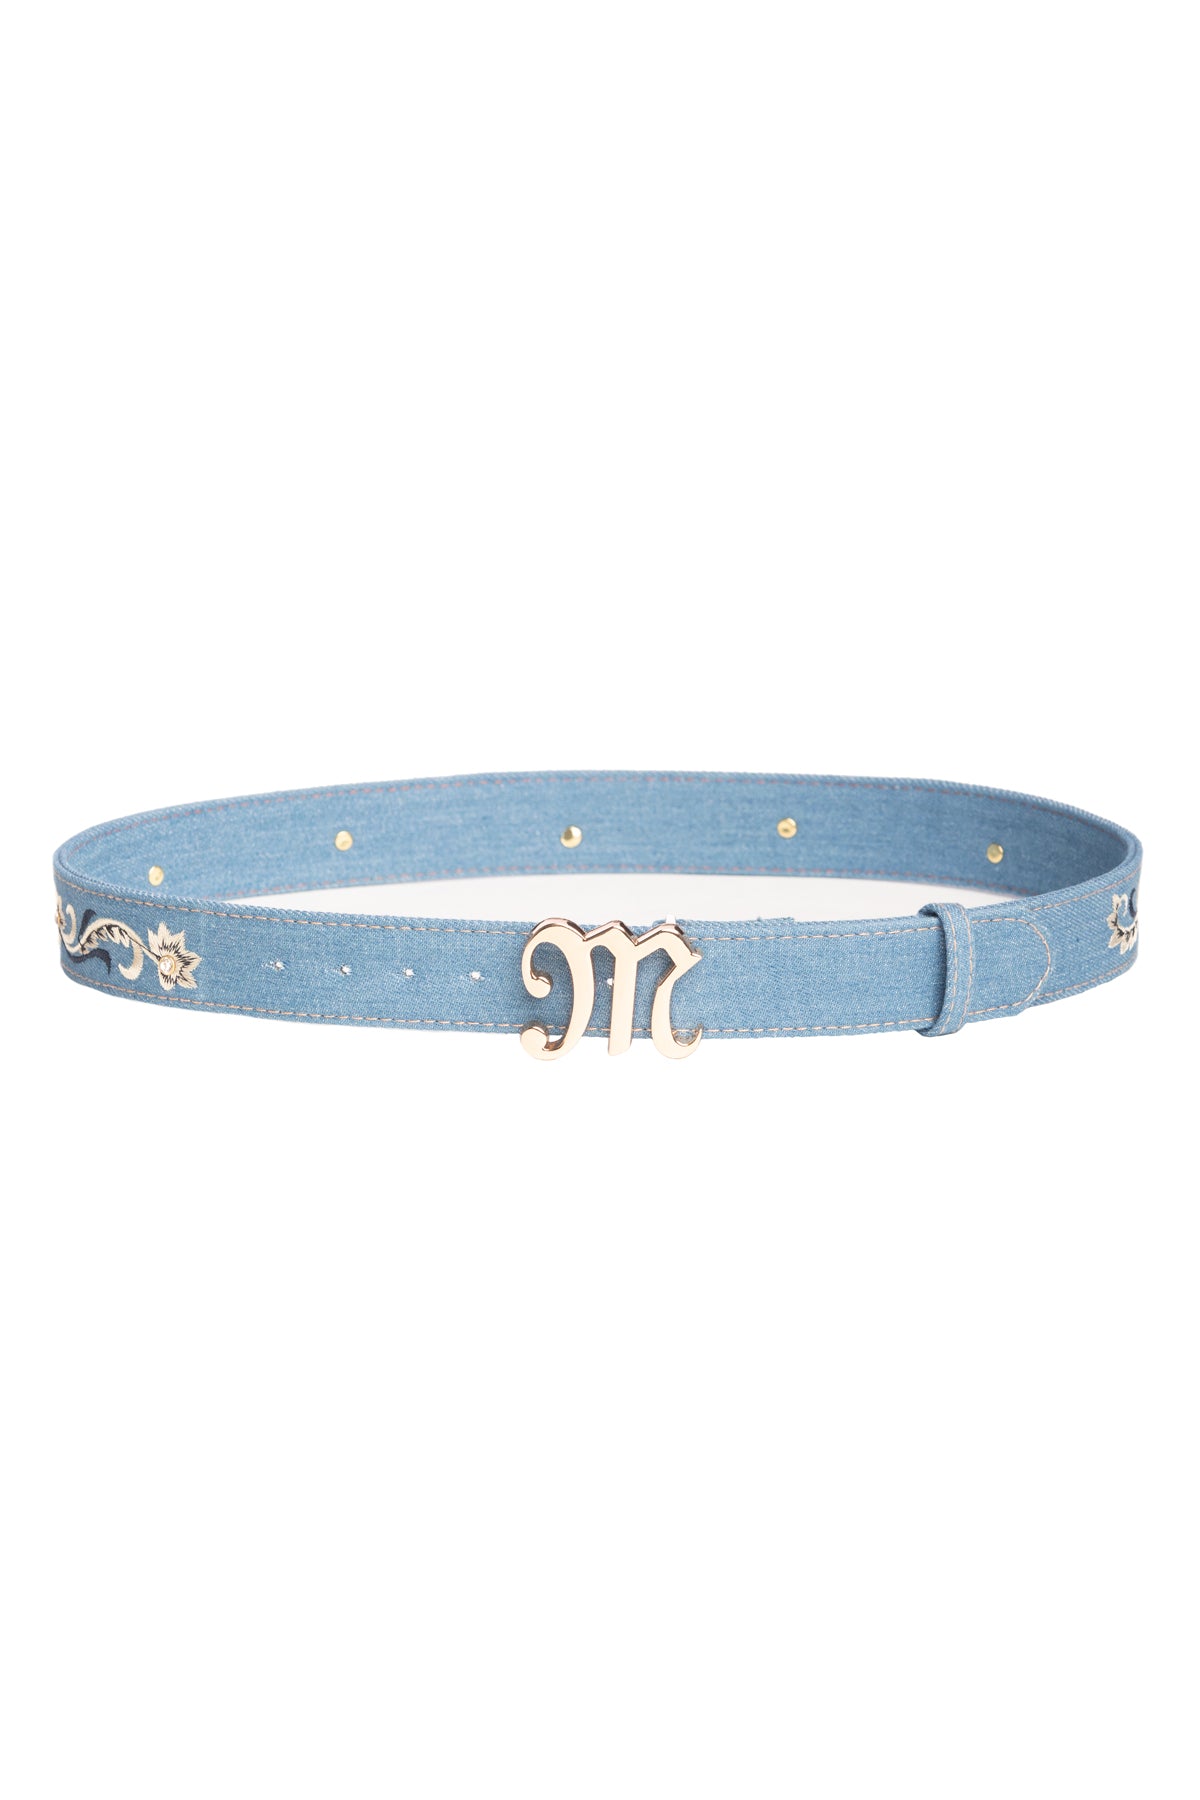 Miss Me Denim Belt, Only $16.10, Blue